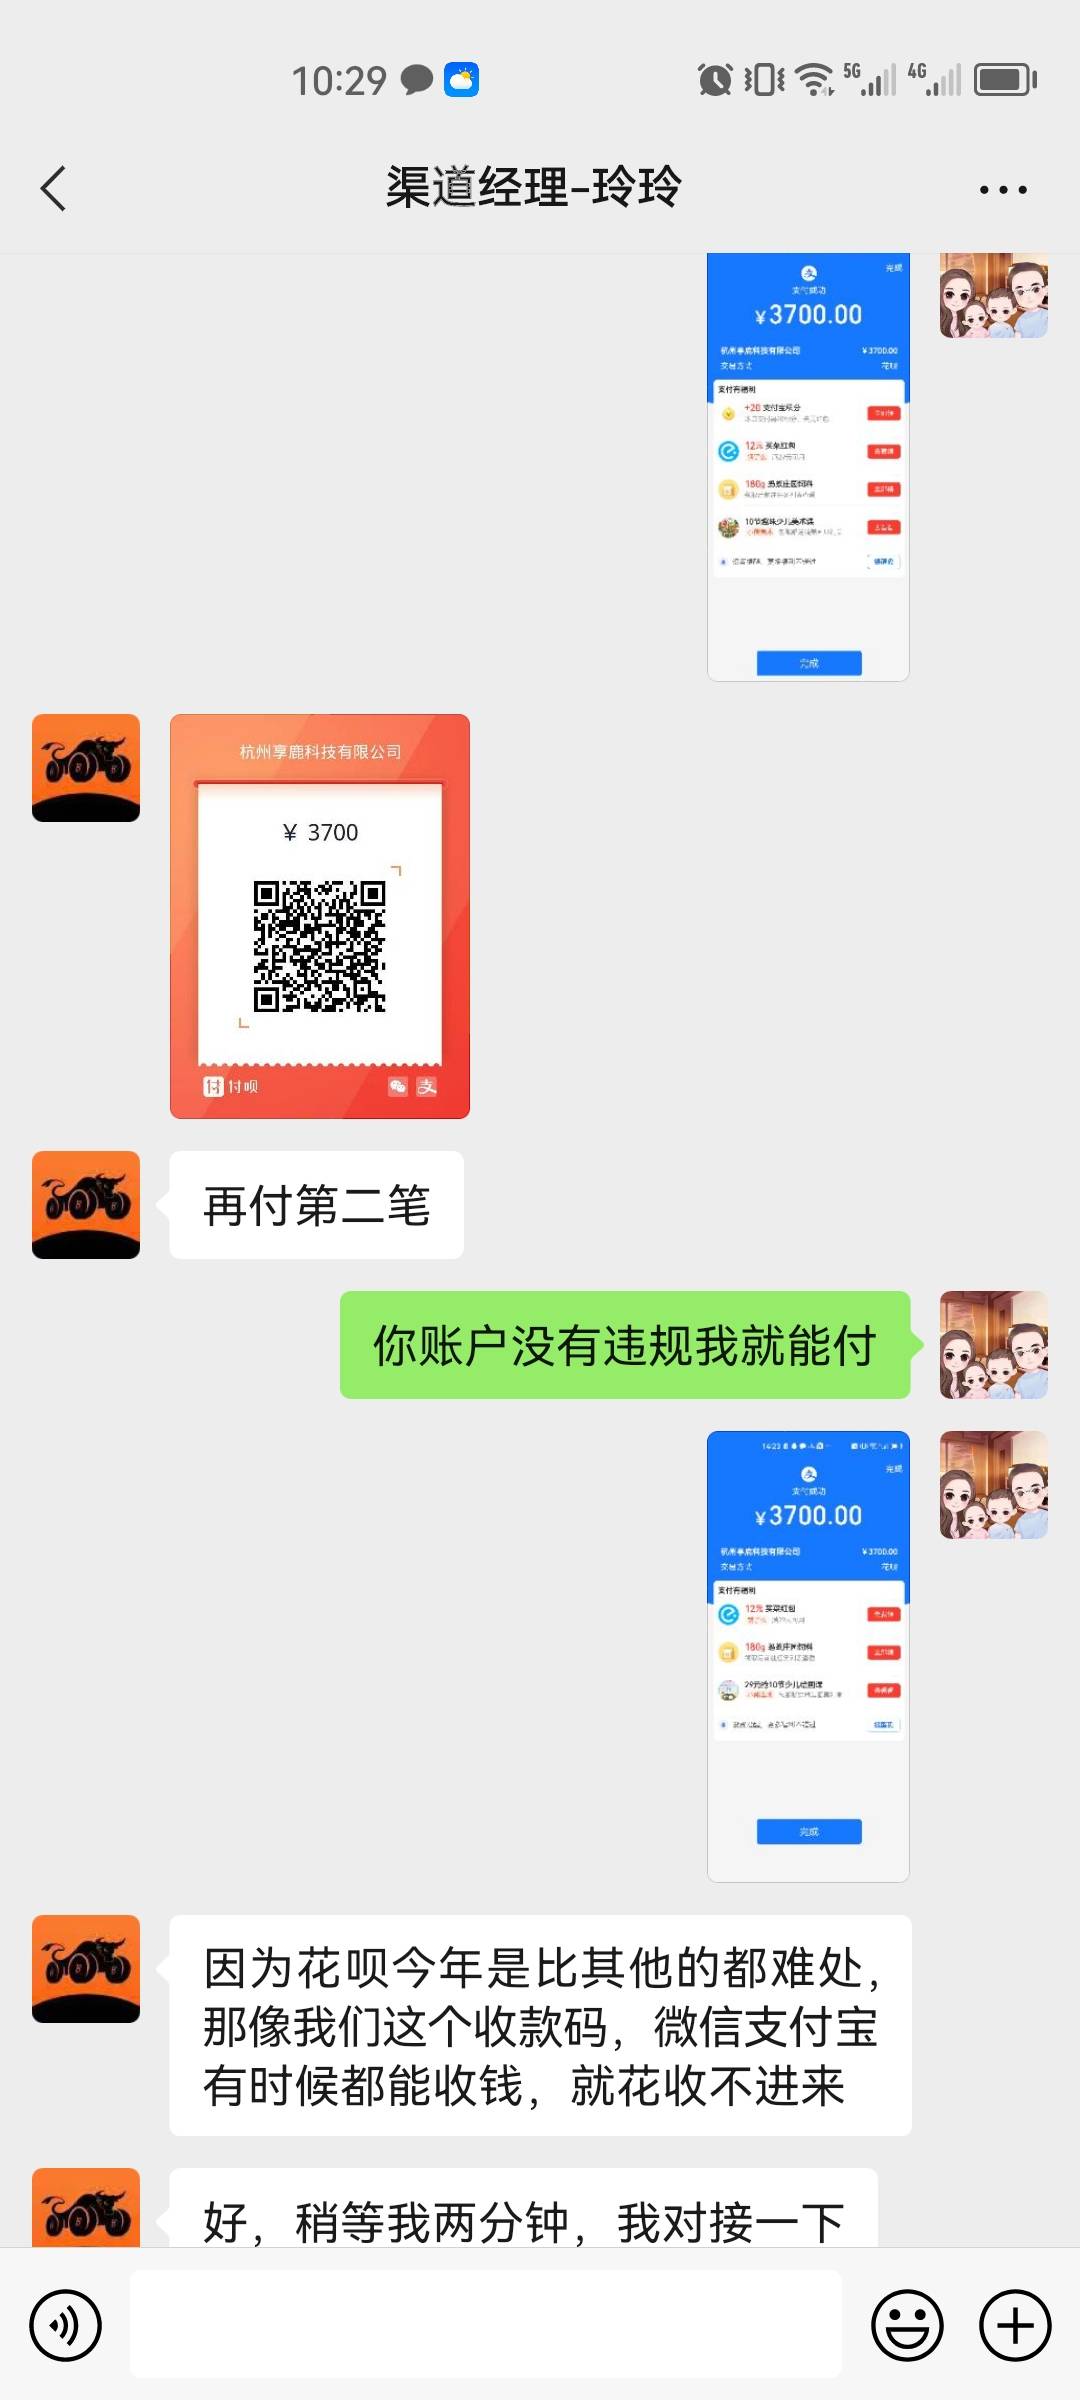 投诉杭州享鹿科技有限公司